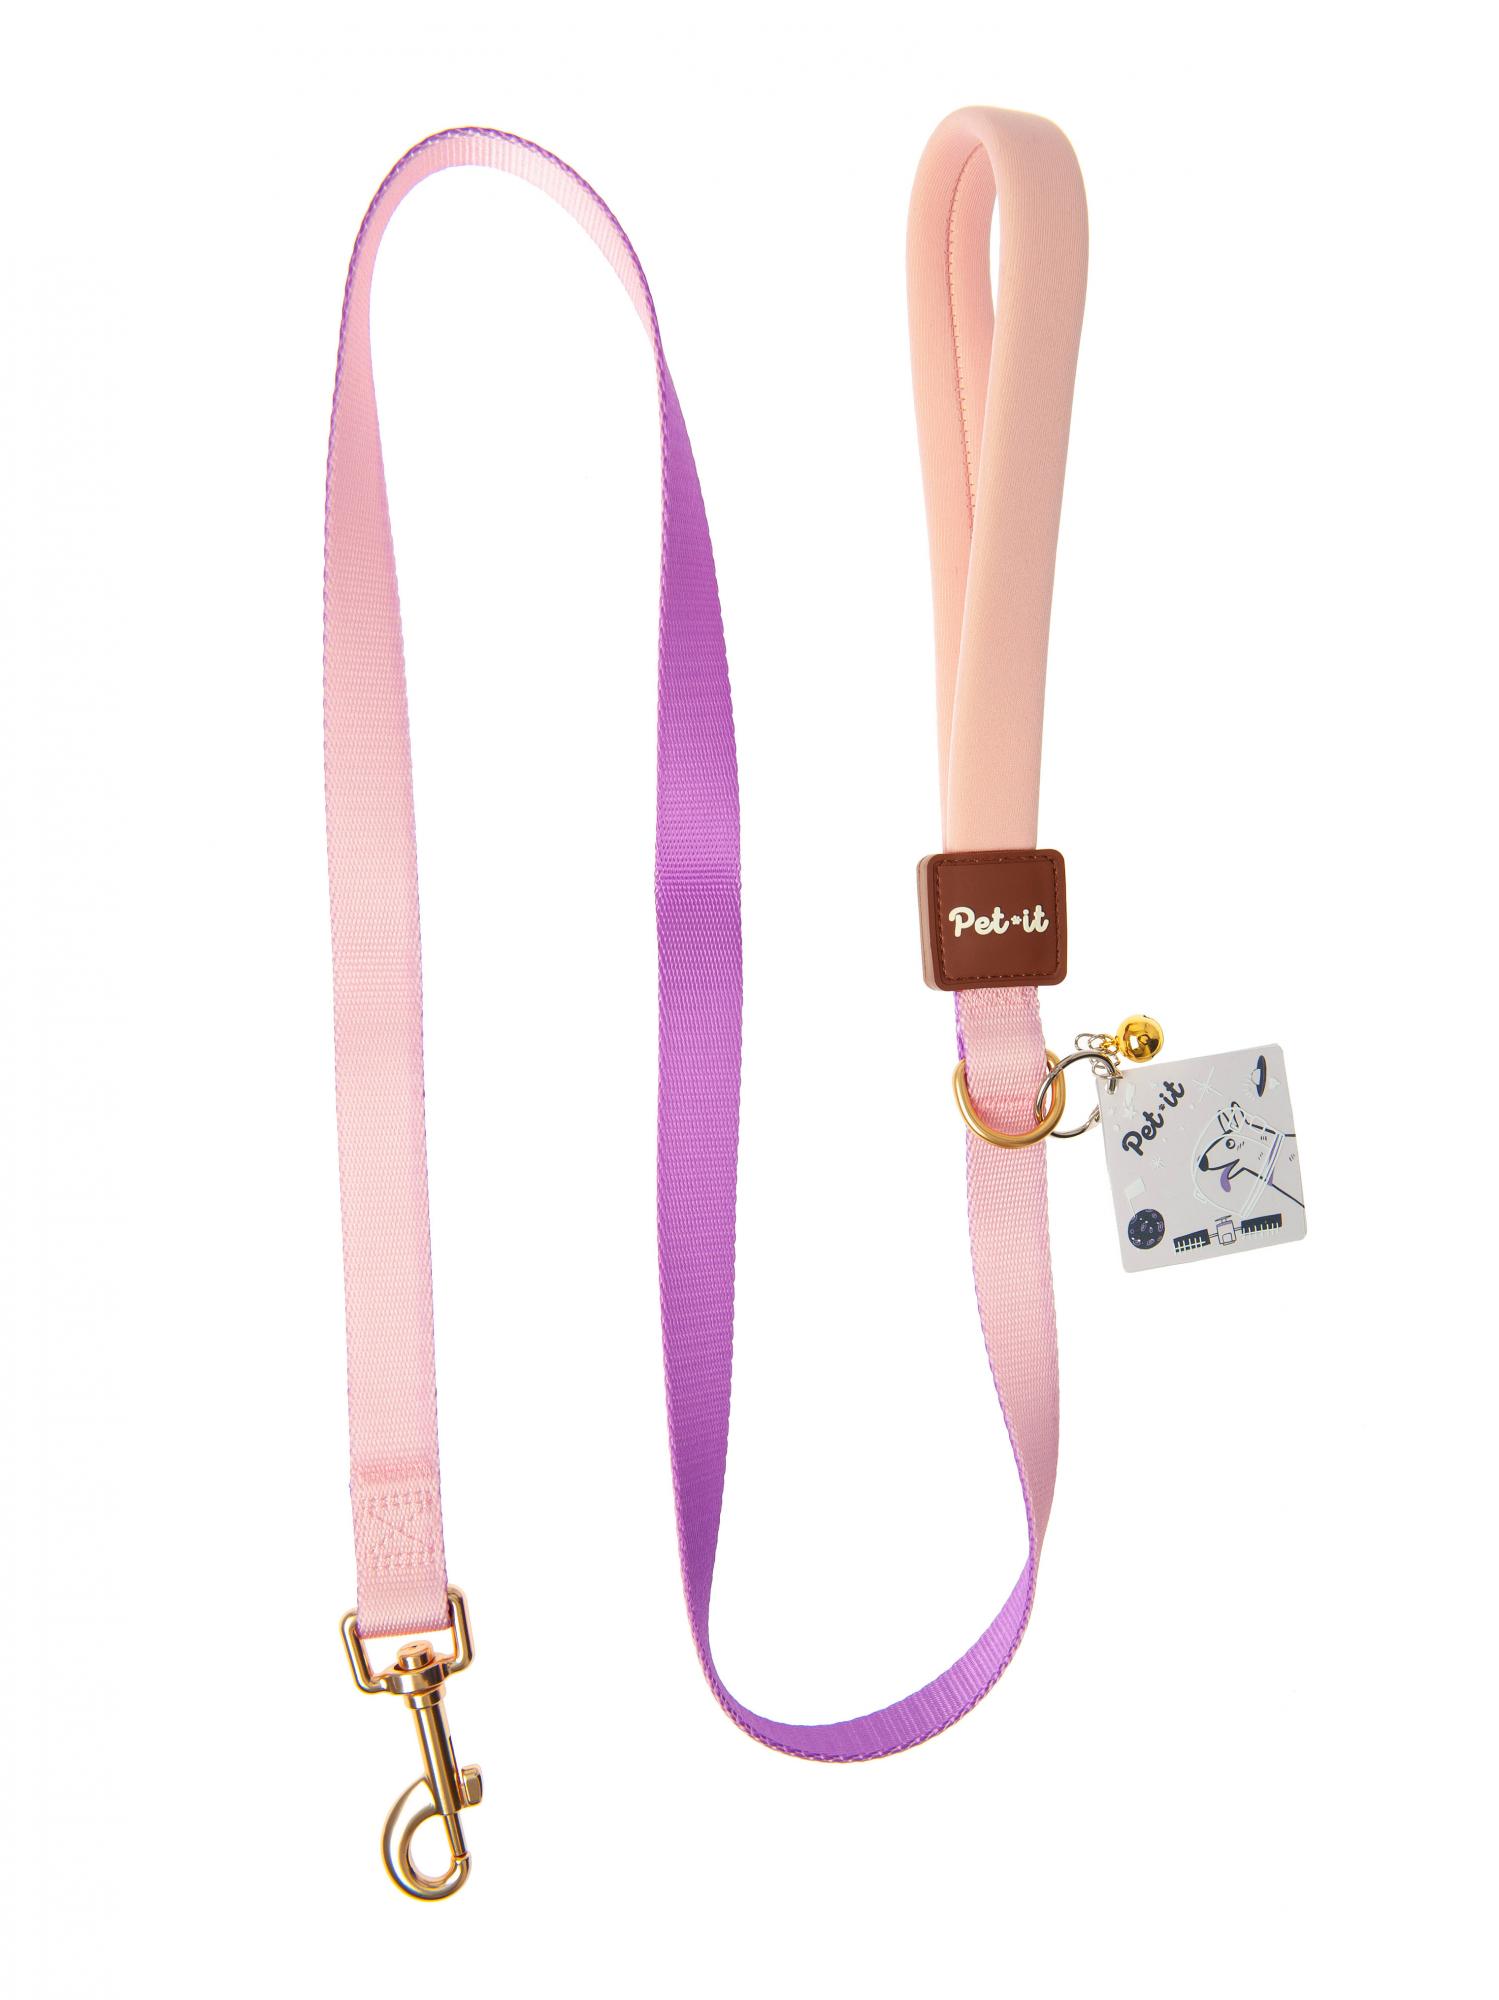 Поводок для собак Pet-it Dream, XS, 1х120 см, розовый